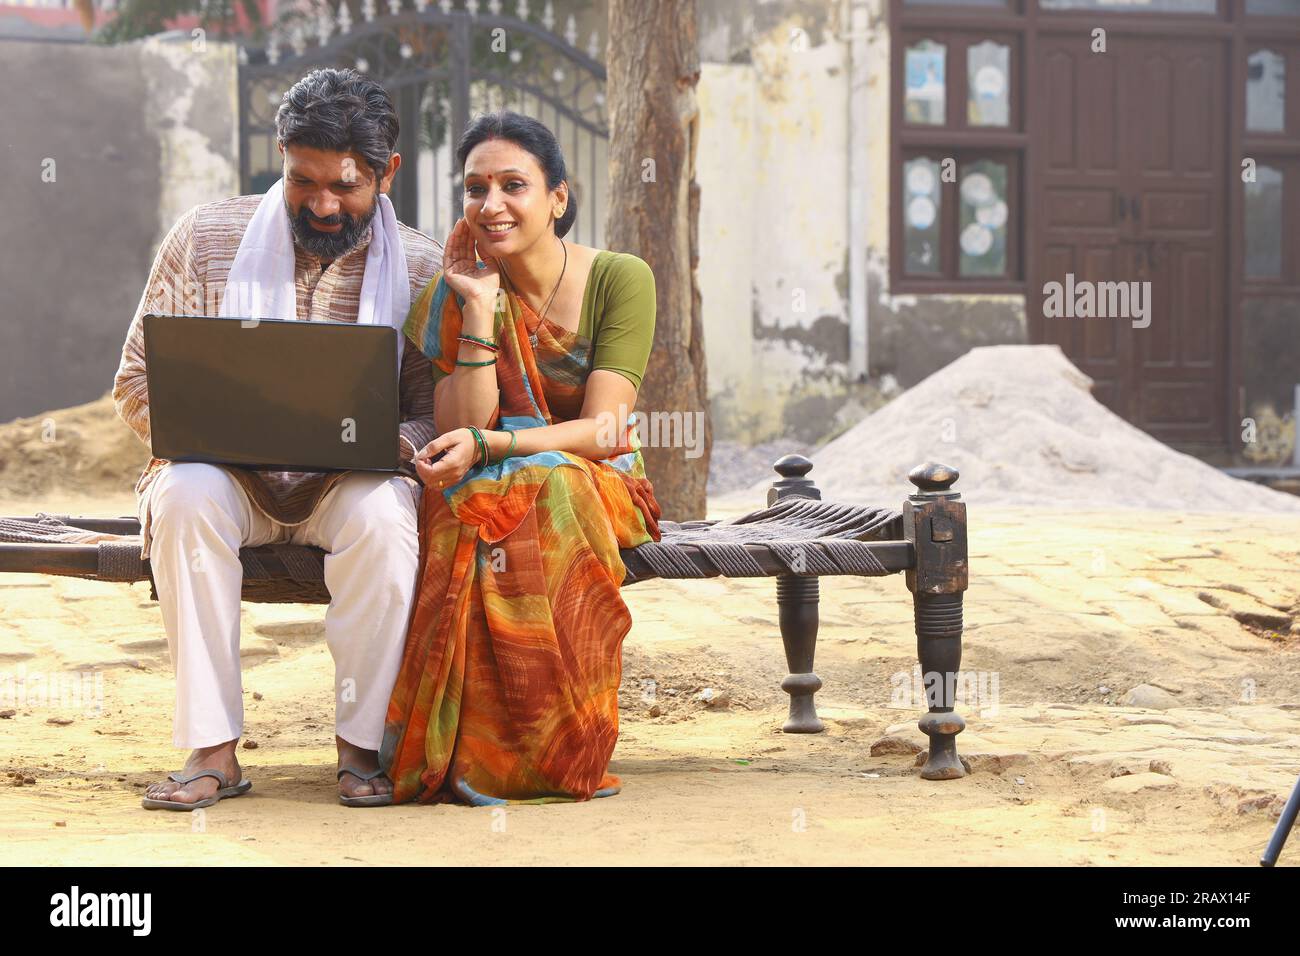 Marito e moglie indiane felici seduti insieme fuori dal cottage / casa / casa con un portatile in mano e navigando online. Foto Stock